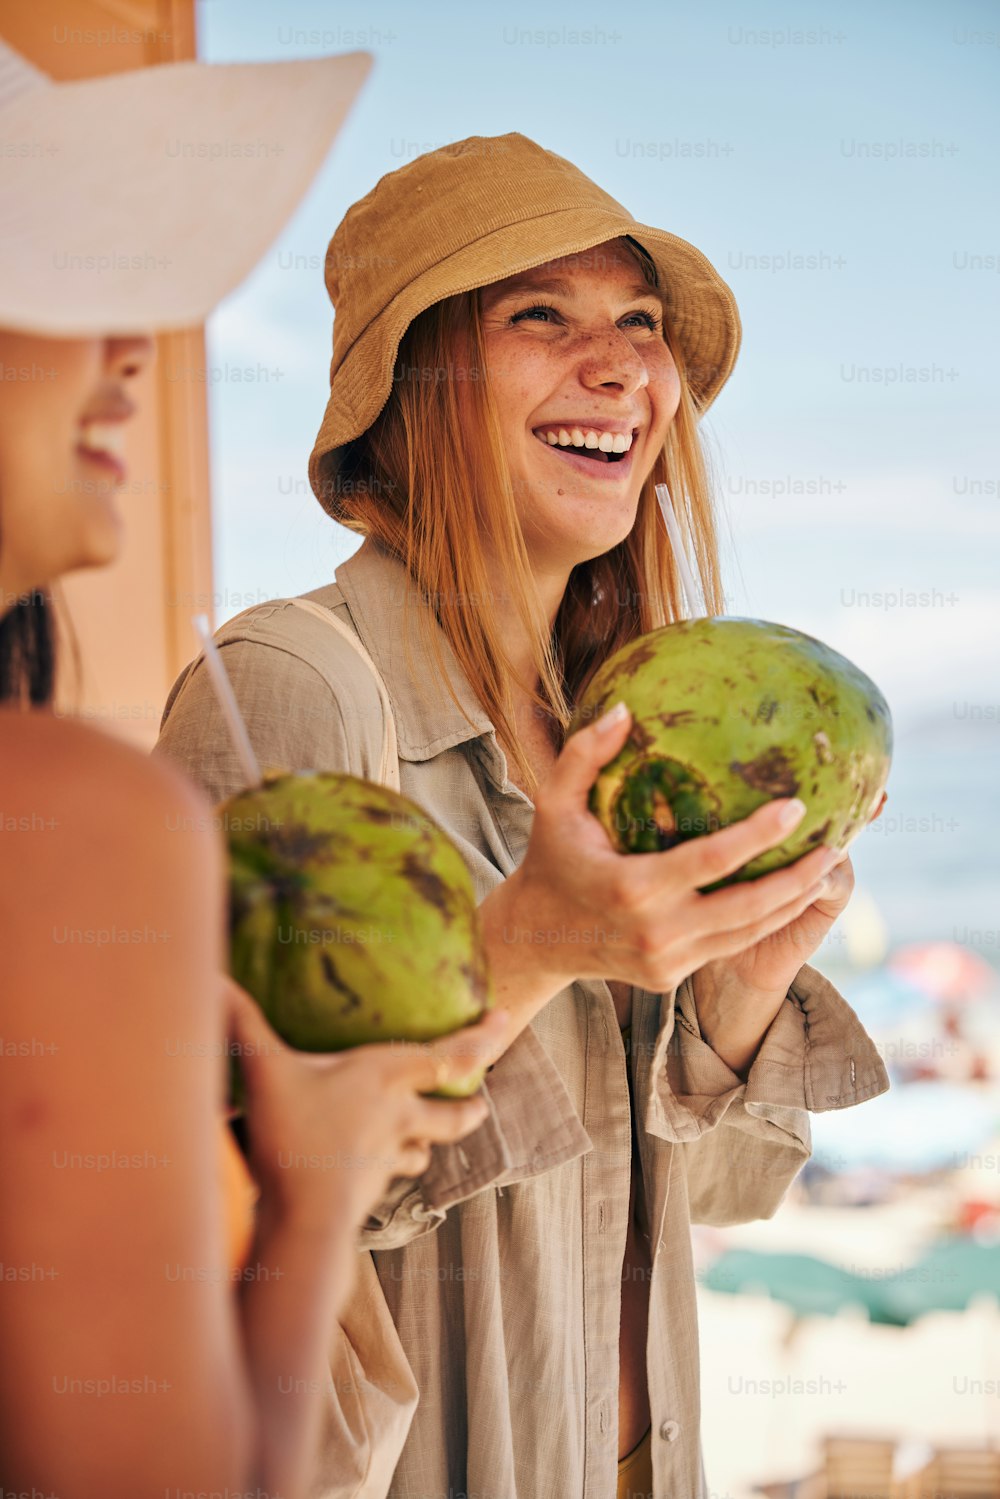 eine Frau mit Hut, die eine Kokosnuss hält